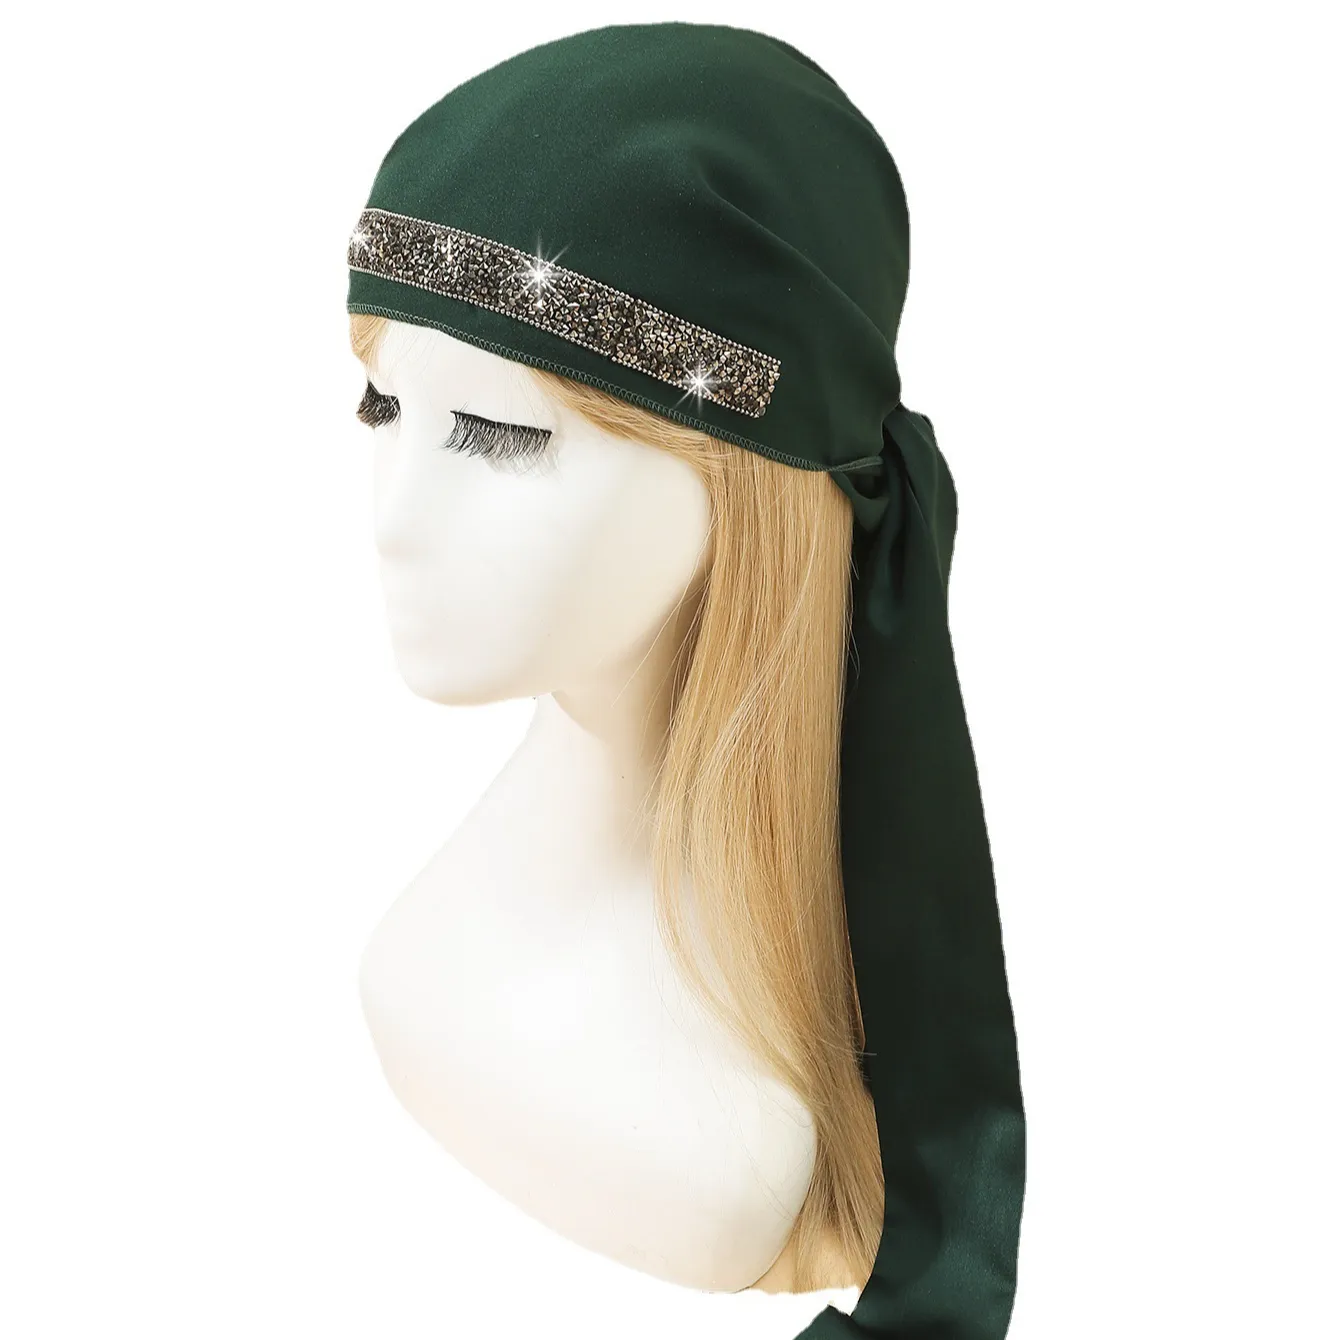 Gorra de trabajo para mujer impresa en 3D turbante con botón y banda para el sudor ajustable para atar la espalda sombreros de tela africana piel animal 